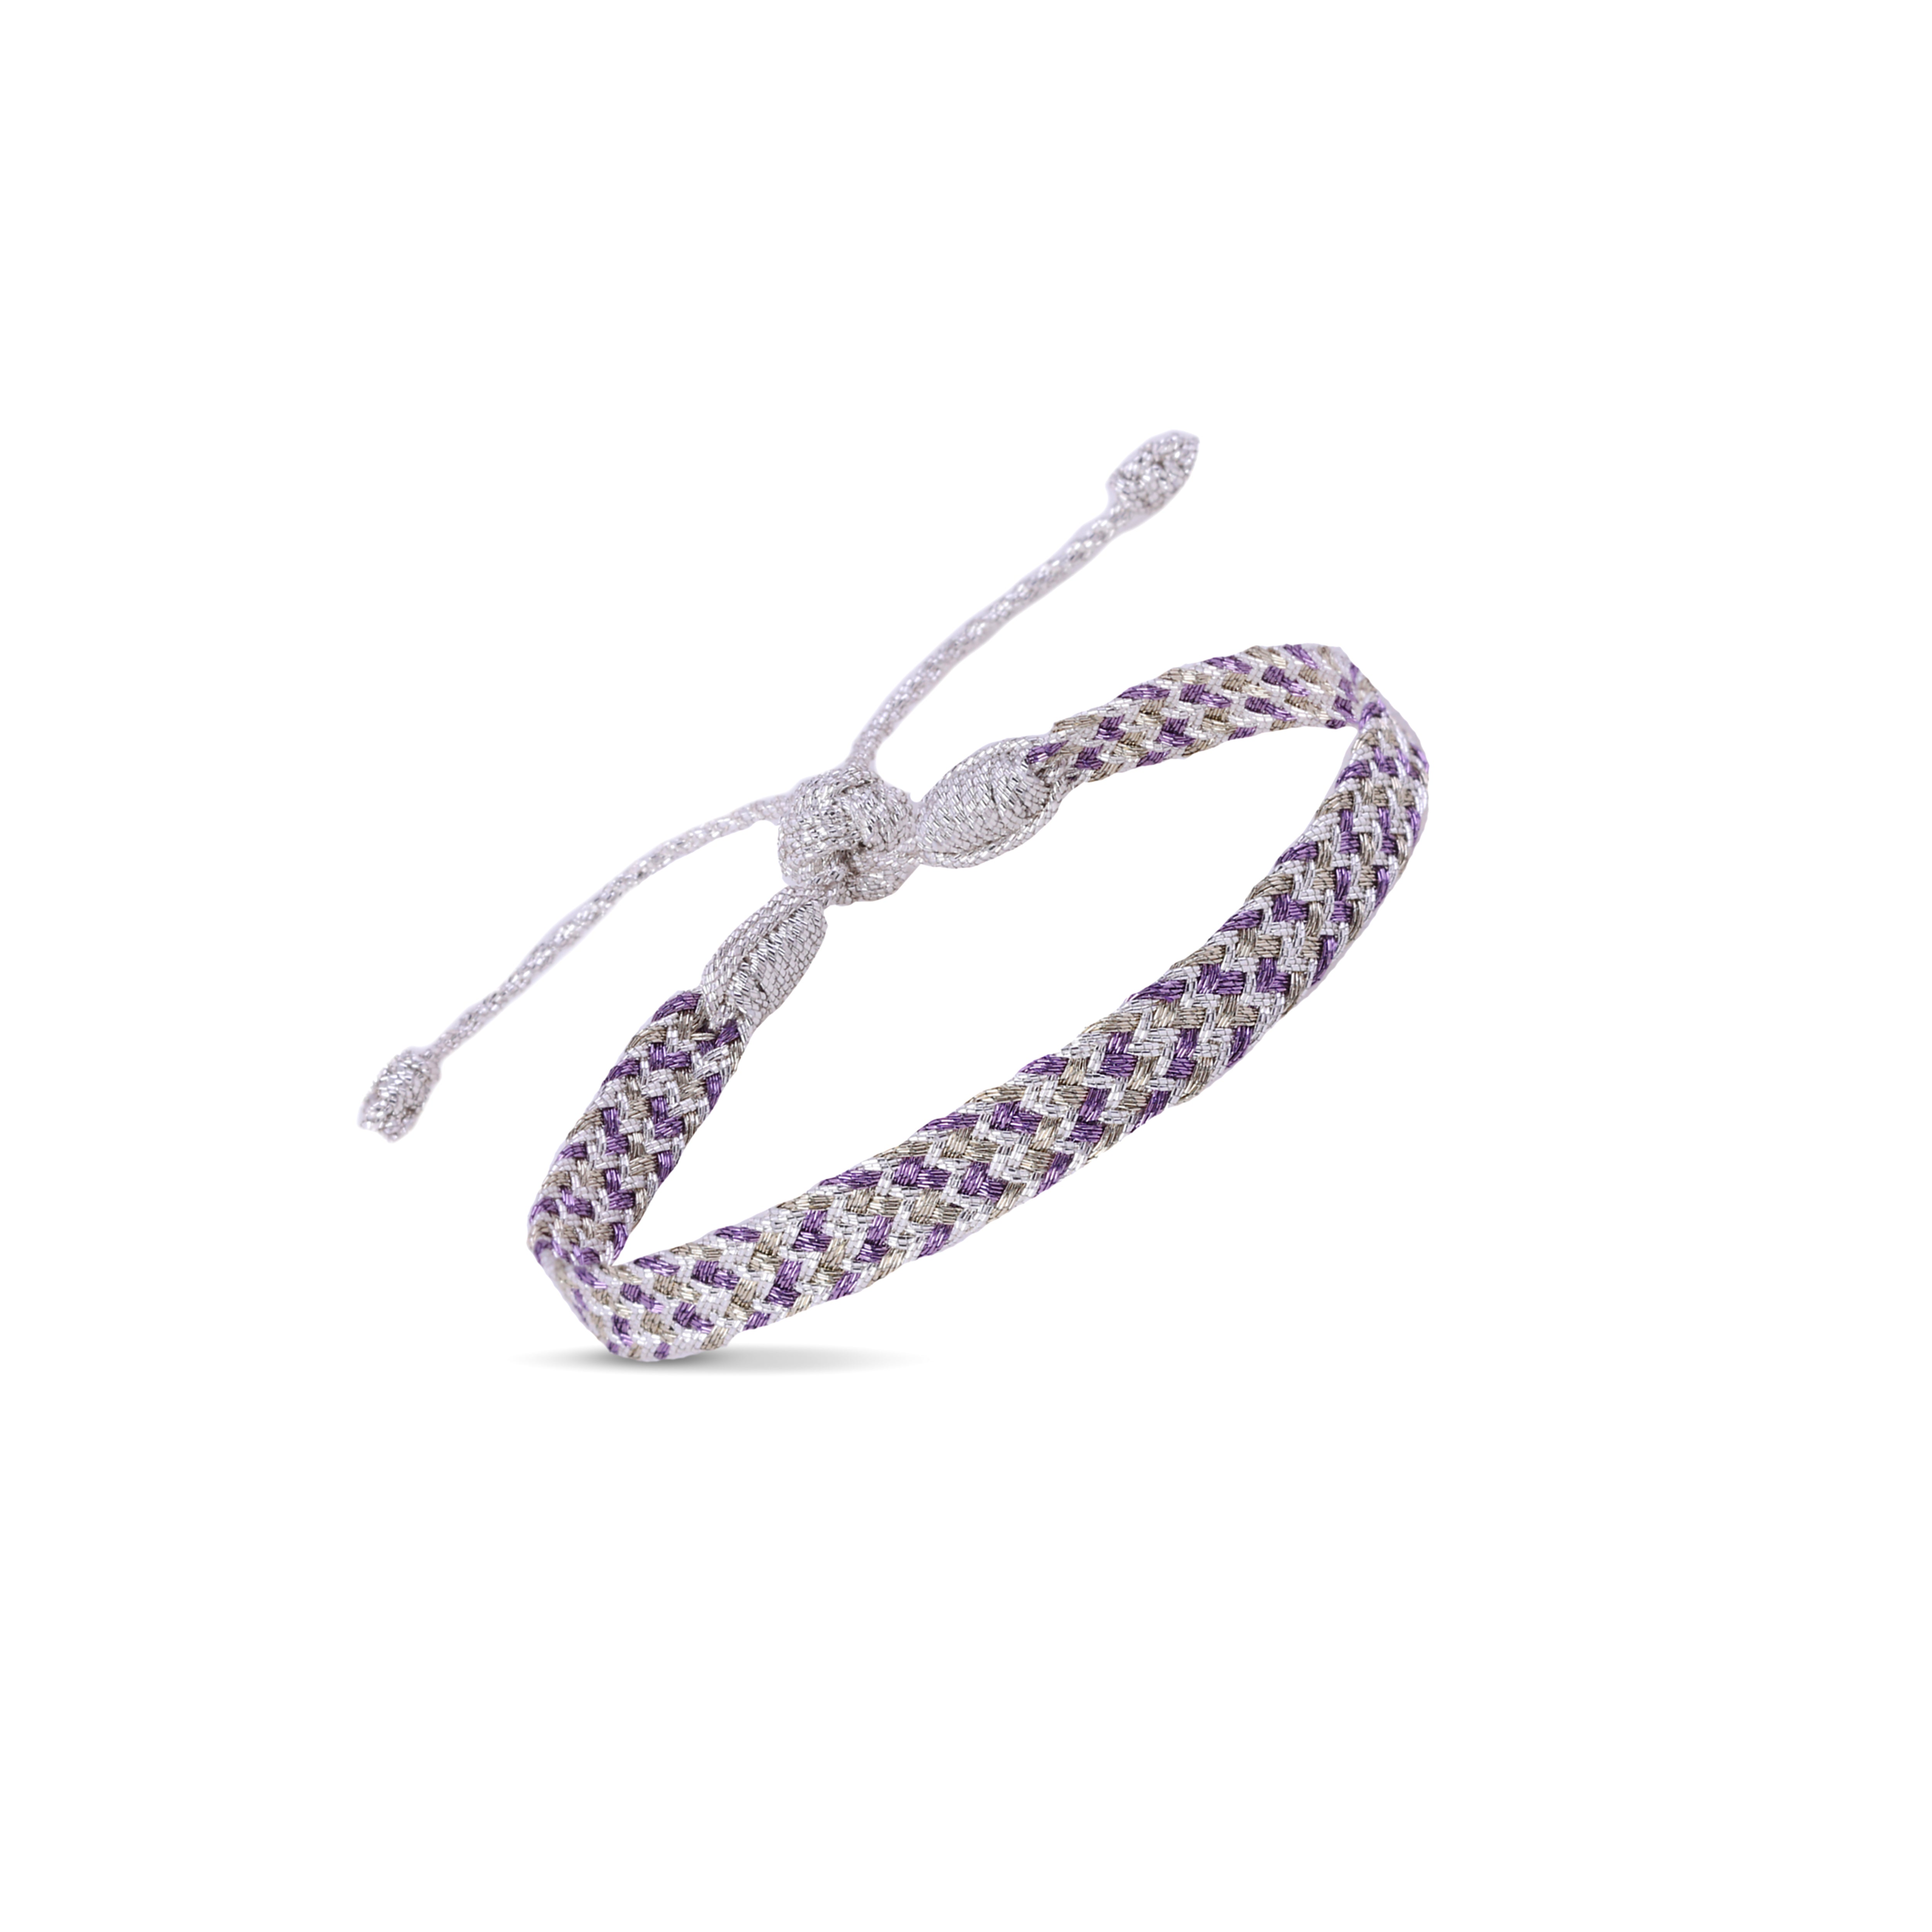 Ania n°2 Bracelet in Silver Ash Lavender